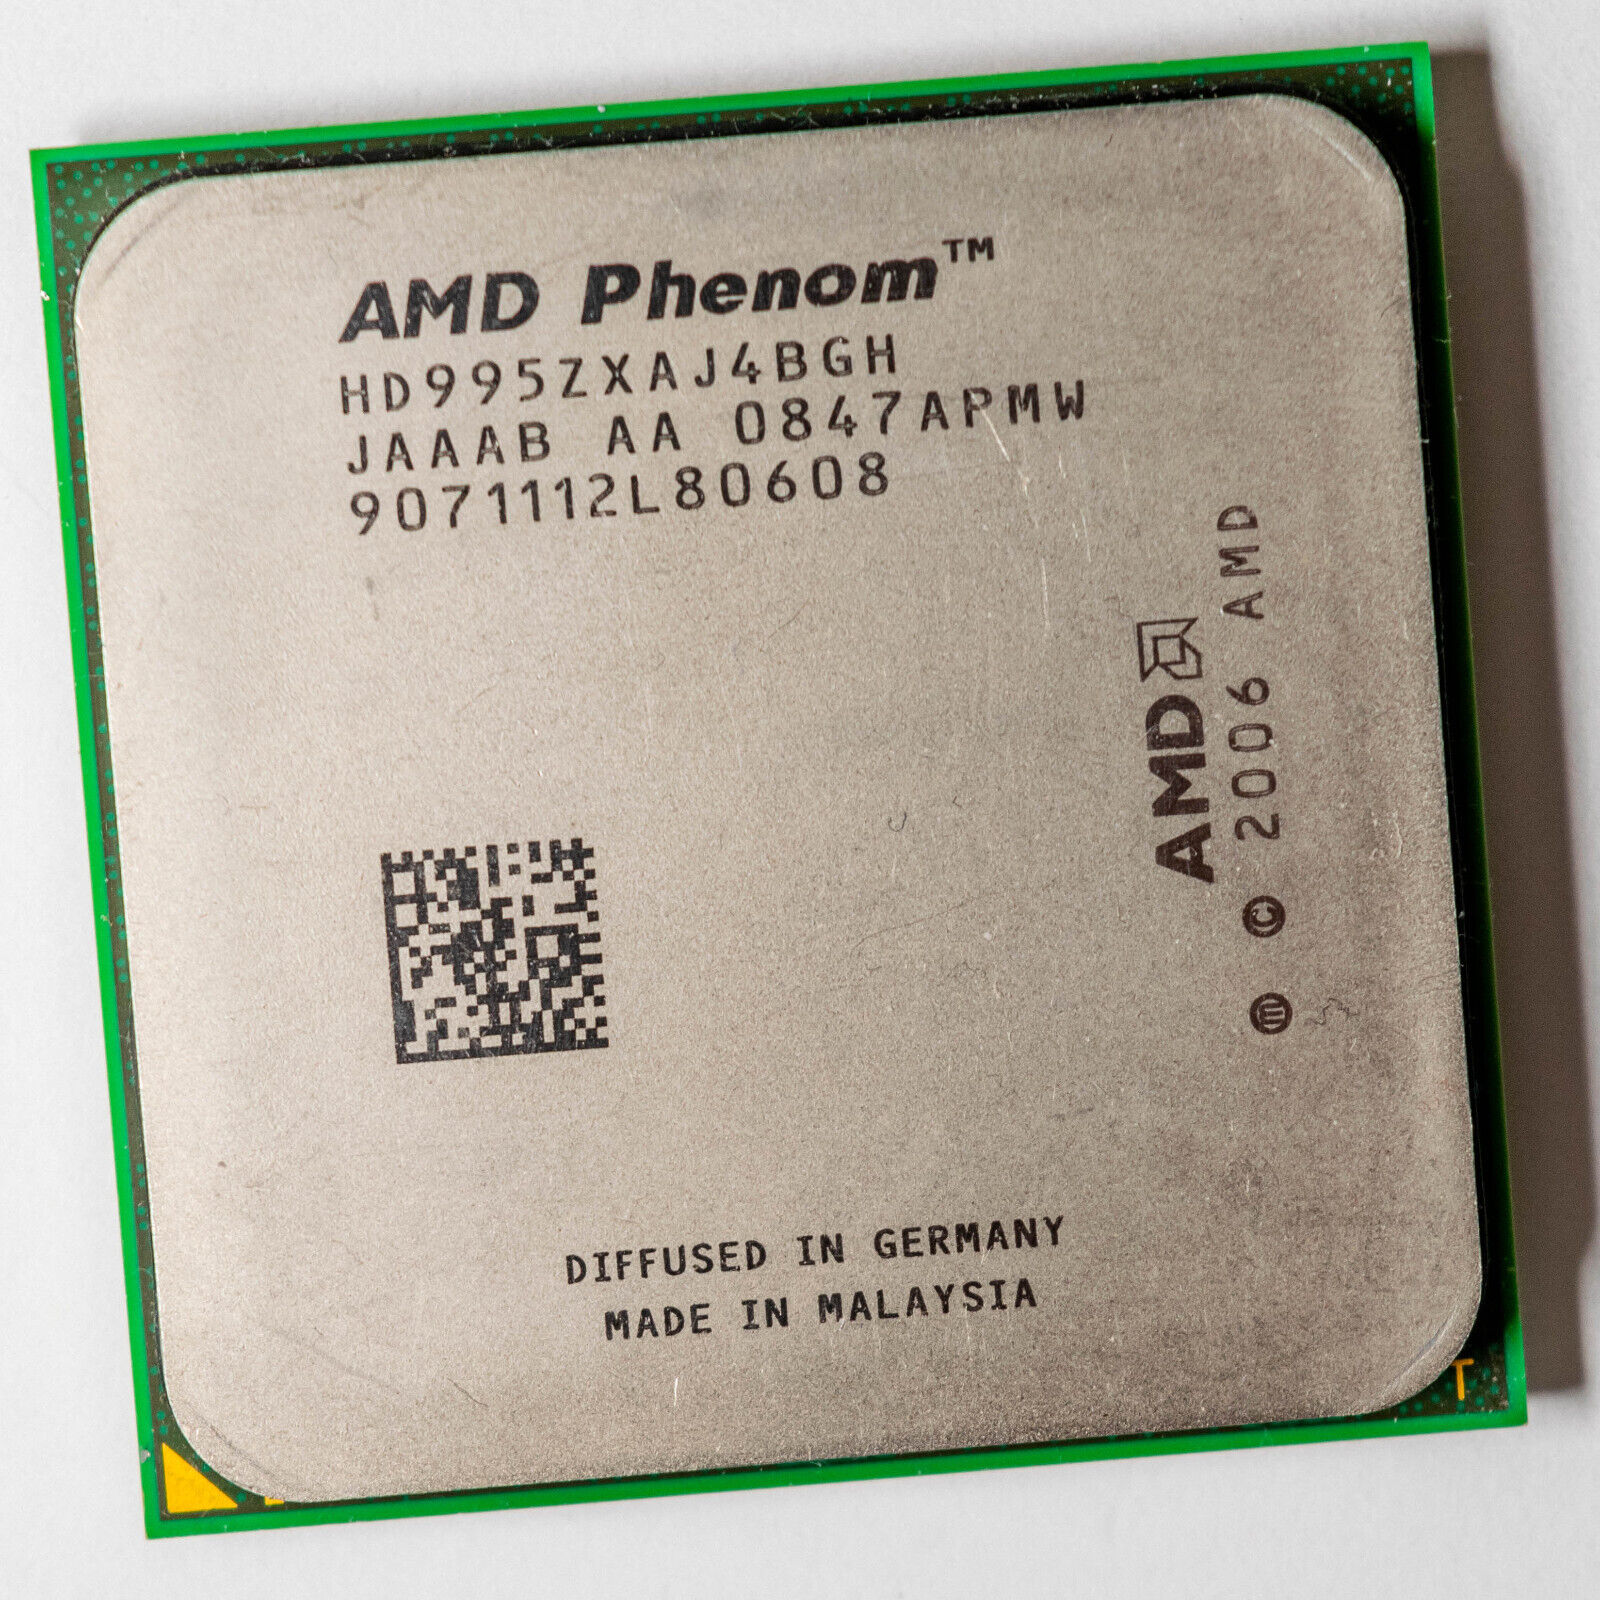 AMD Phenom X4 9950 Black Edition 2.6GHz Fastest AM2+ Quad Core CPU HD995ZXAJ4BGH